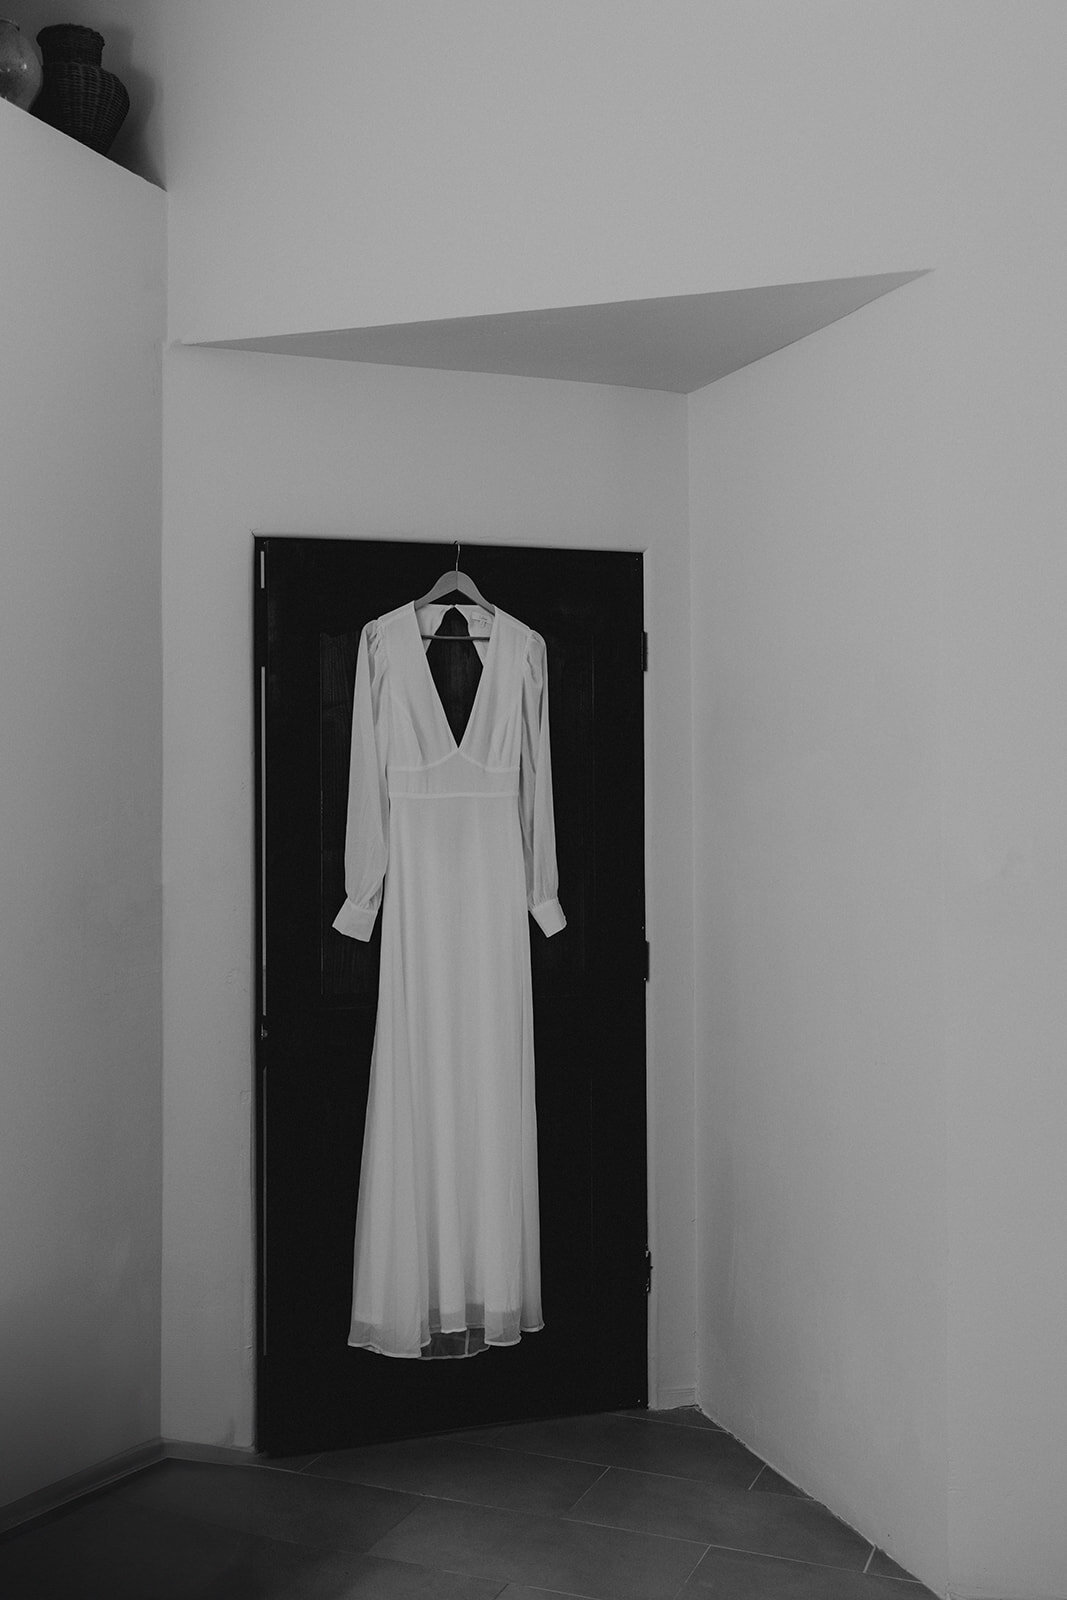 brides gown handing on a door